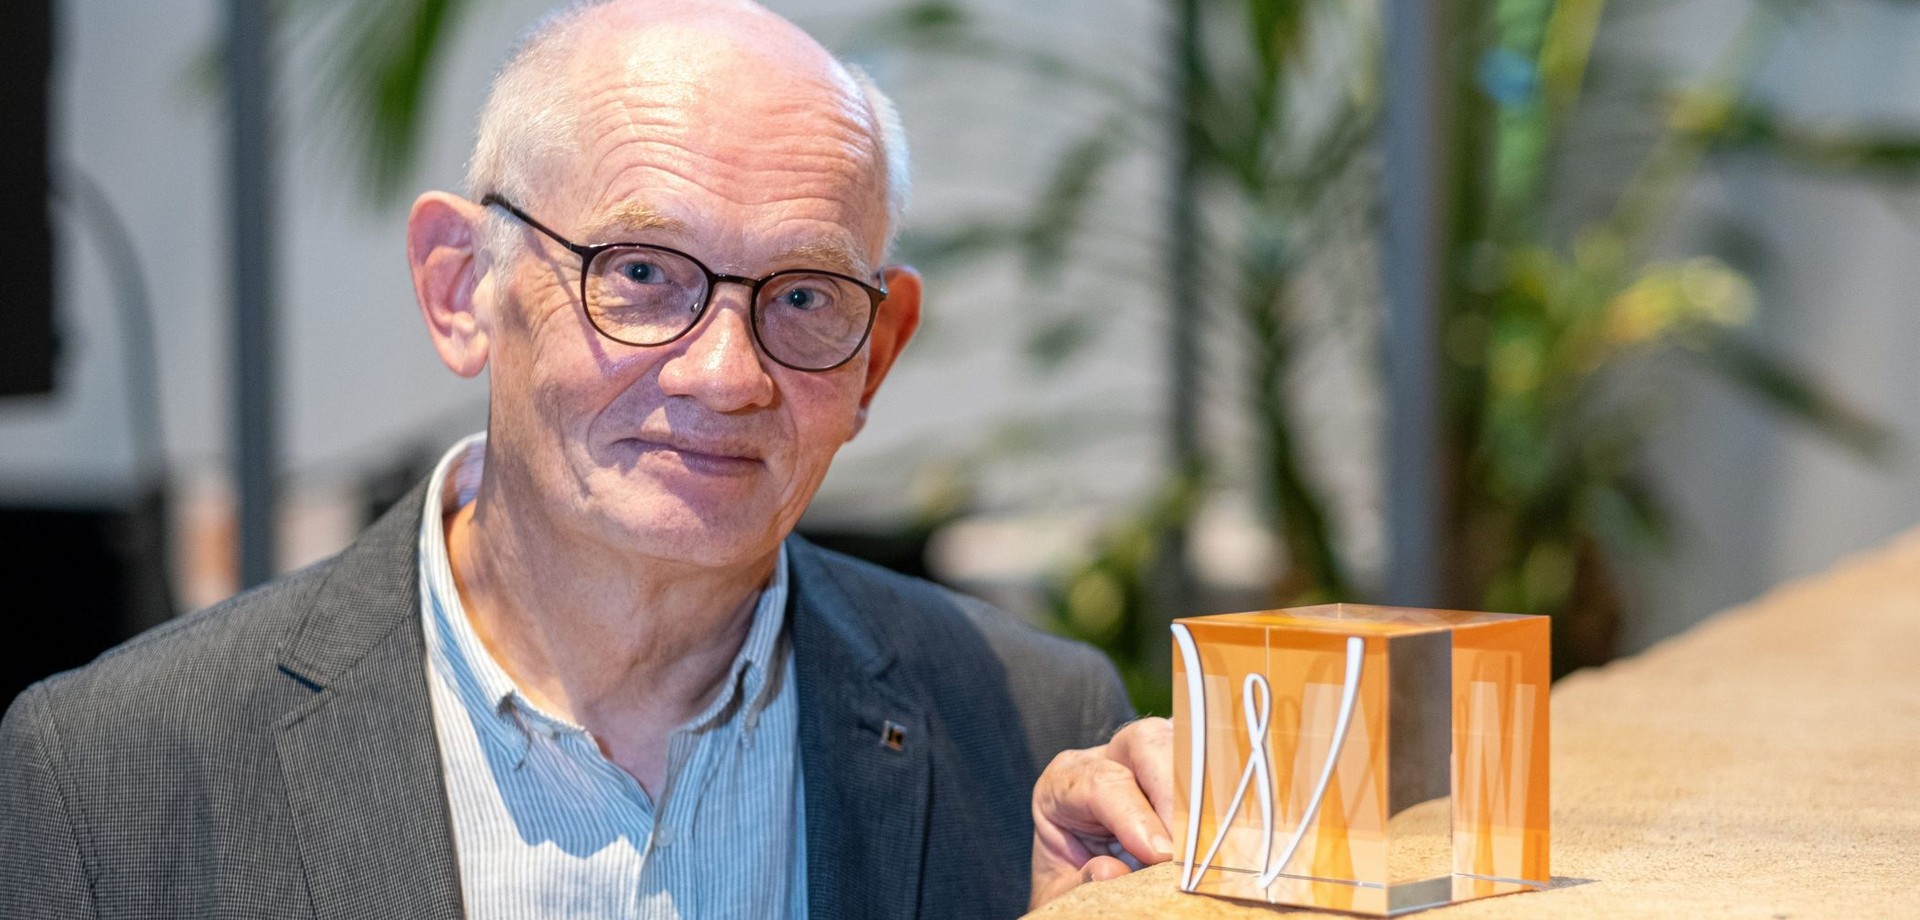 Mathias Austermann, Mann mit grauem Haar und Brille, steht lächelnd neben dem Karl-Zuhorn-Preis.